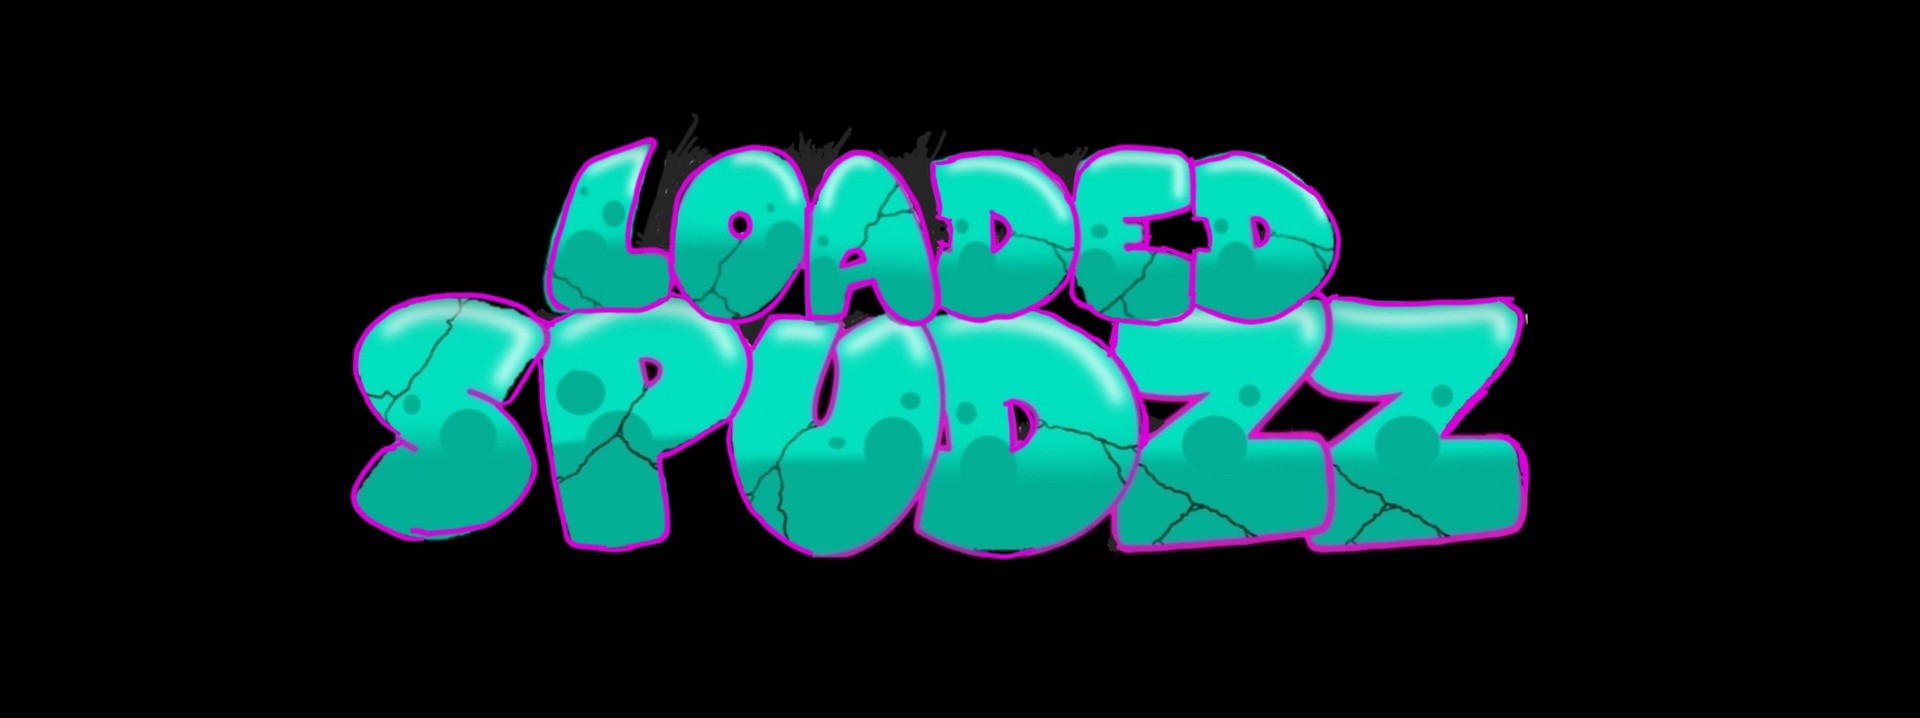 Loaded Spudzz